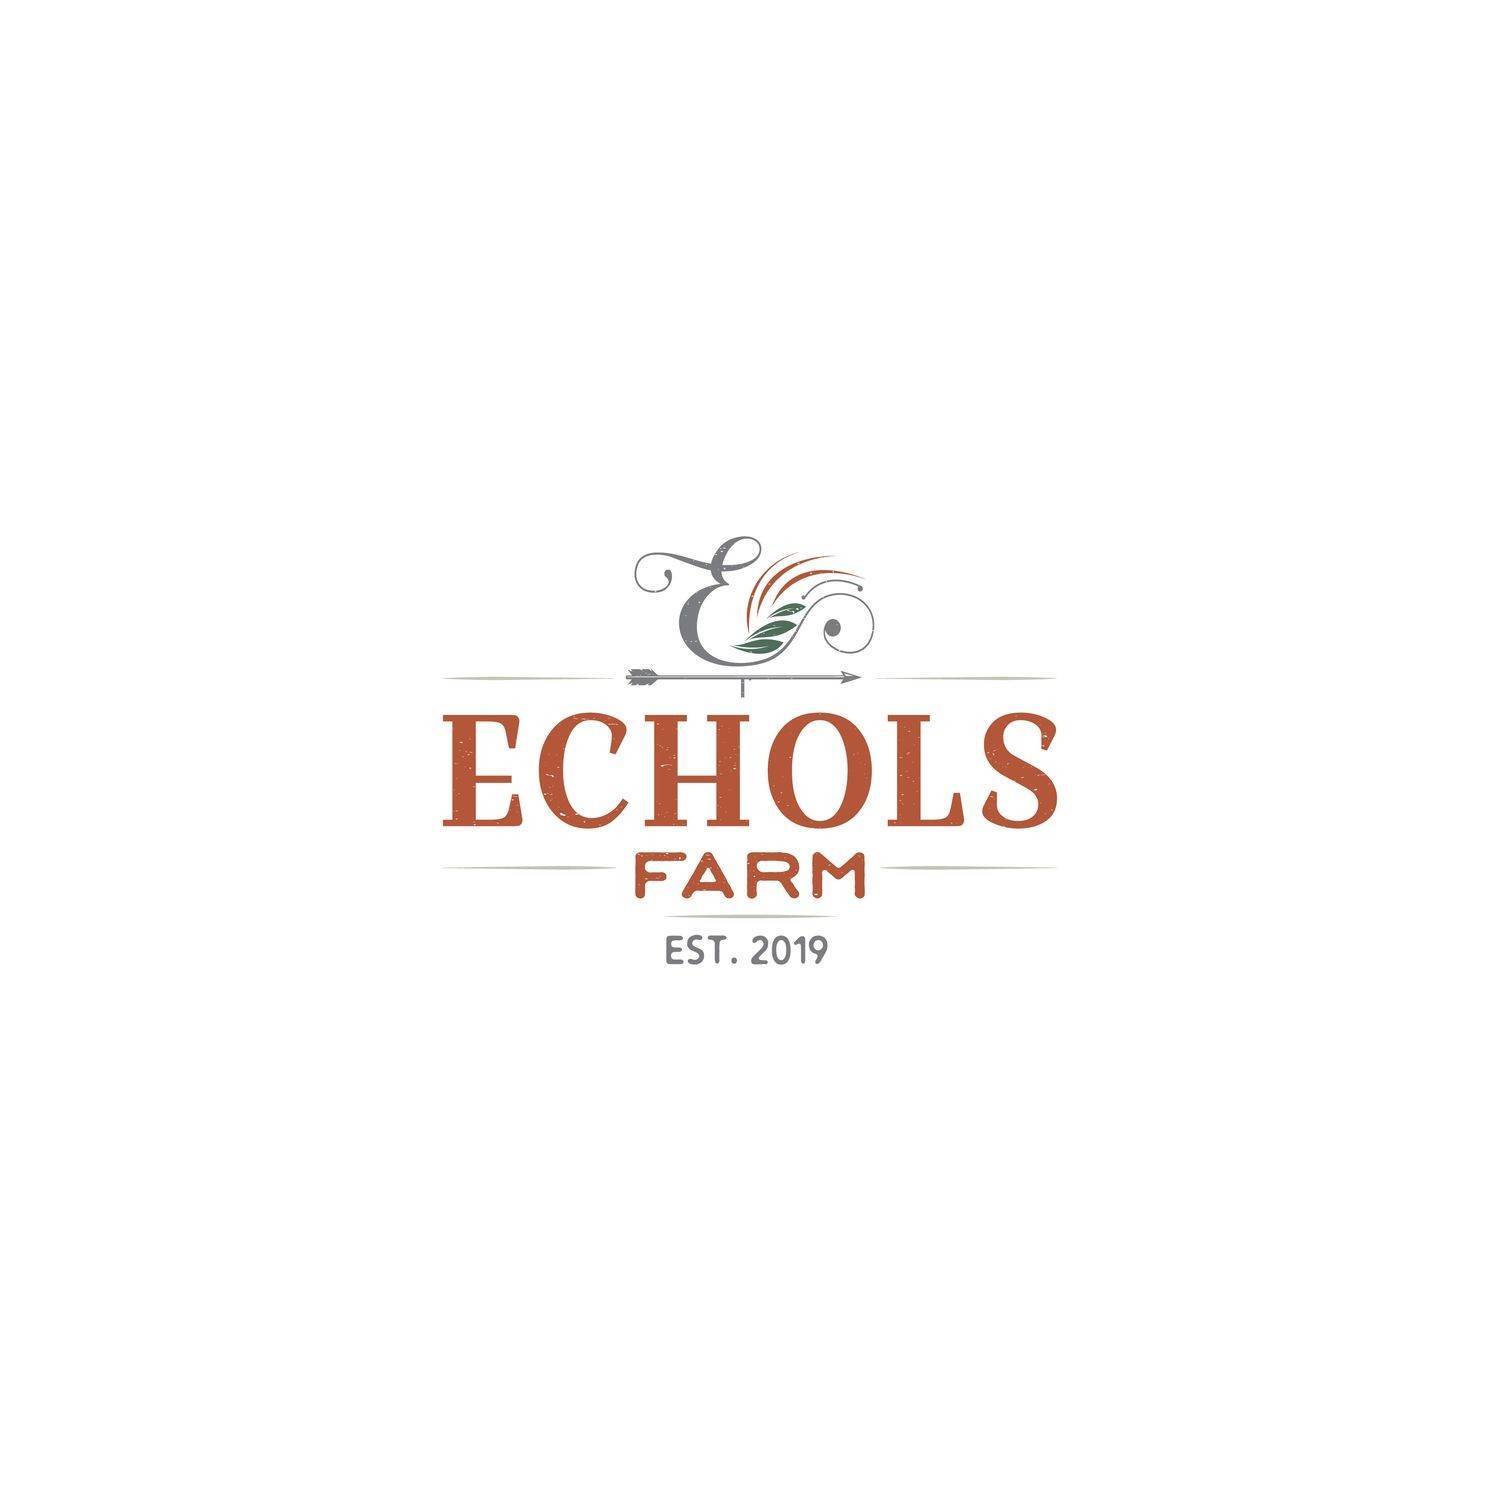 6. Echols Farm здание в 4511 Macland Road, Hiram, GA 30141